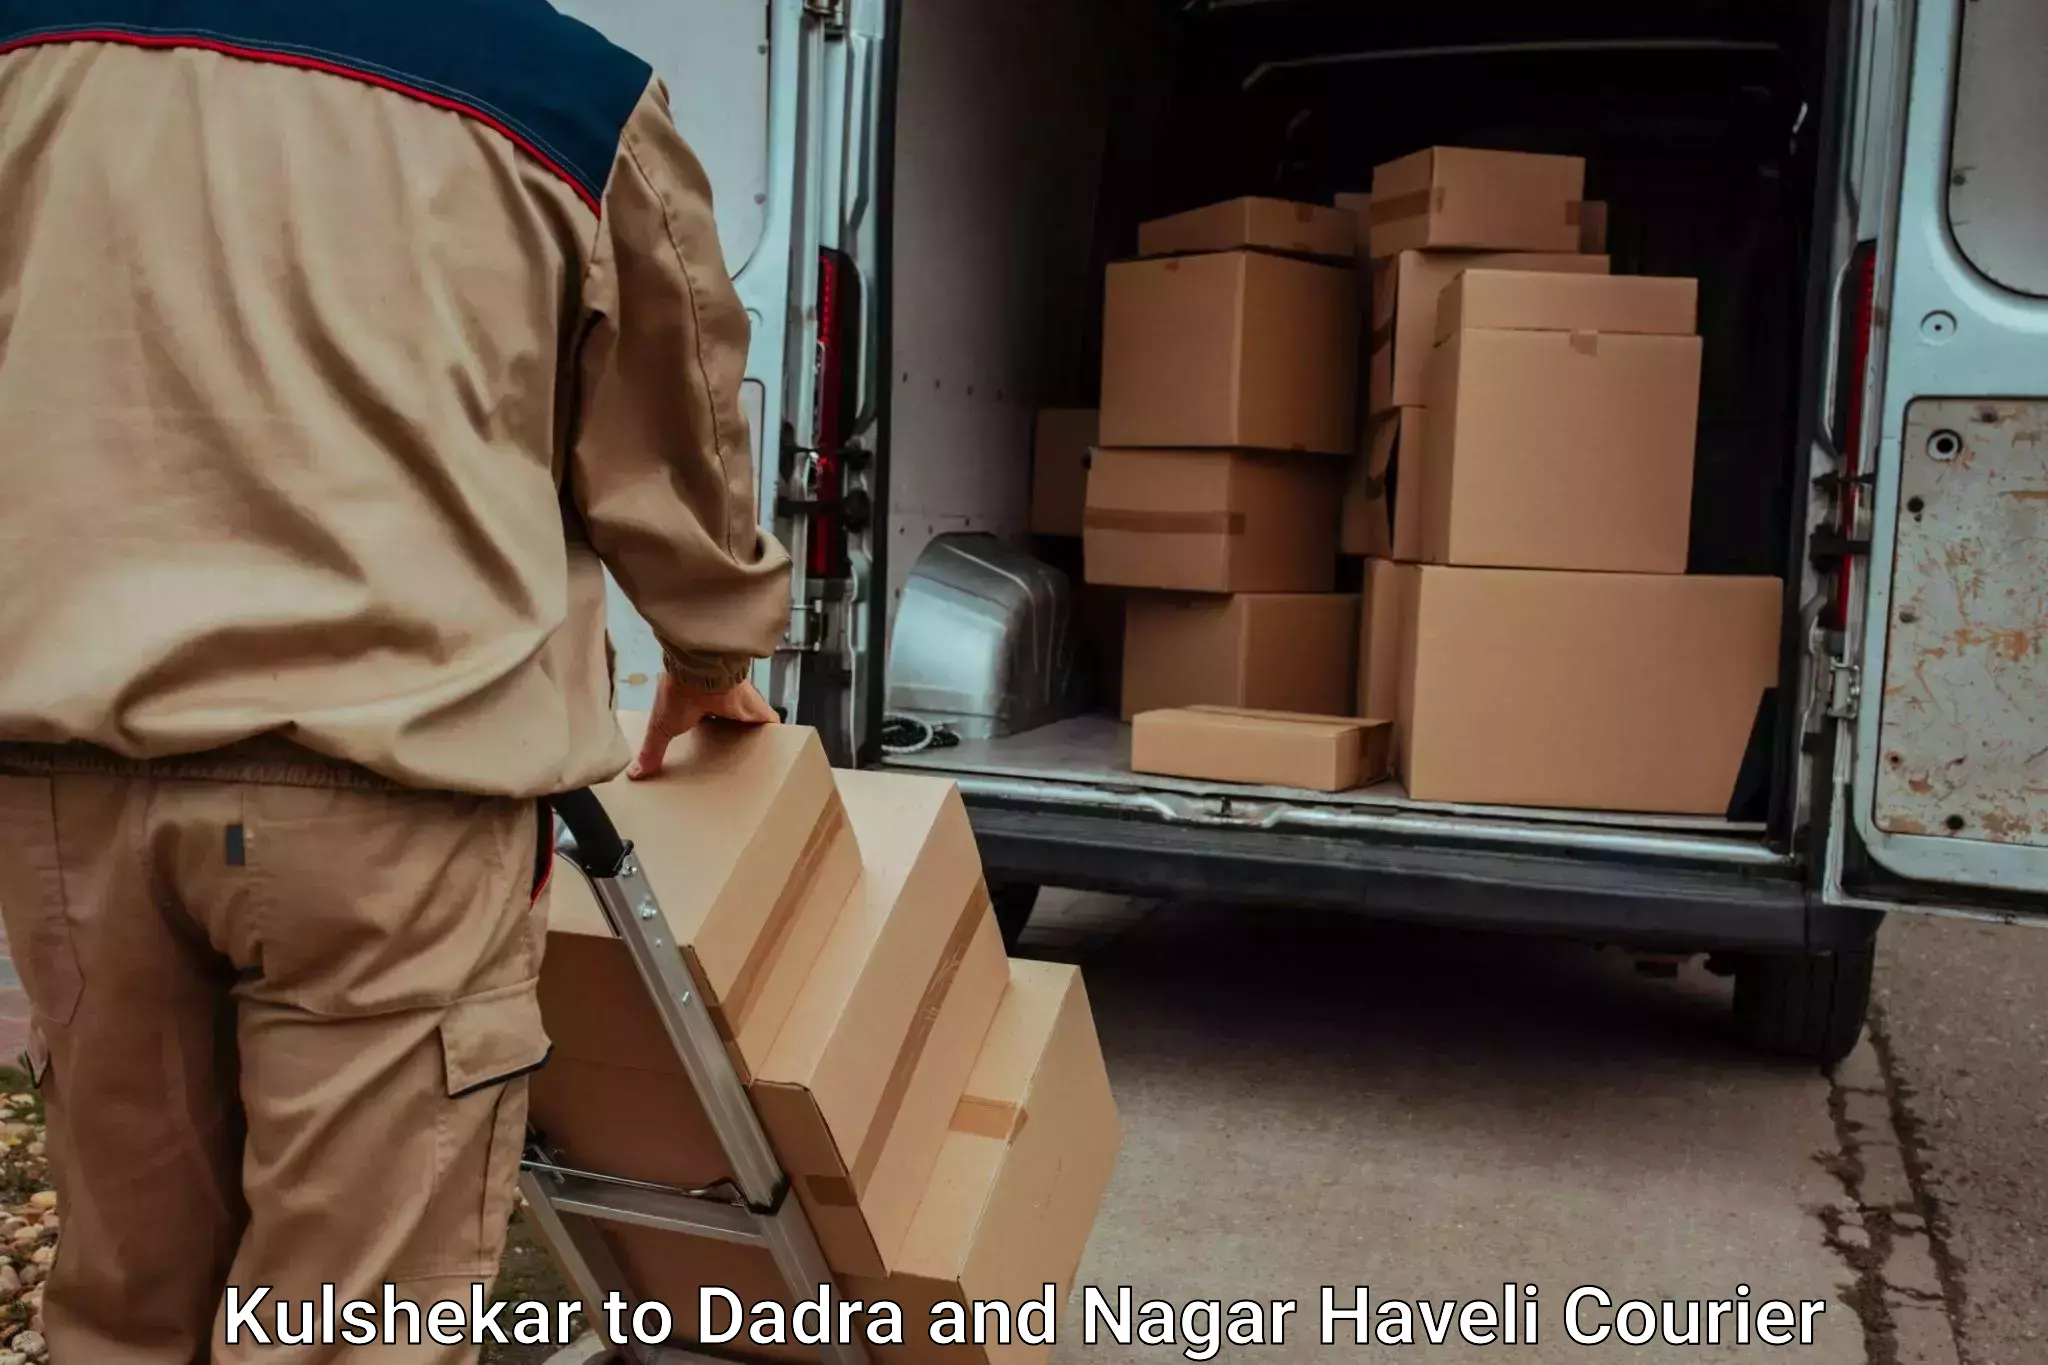 Luggage delivery news Kulshekar to Dadra and Nagar Haveli